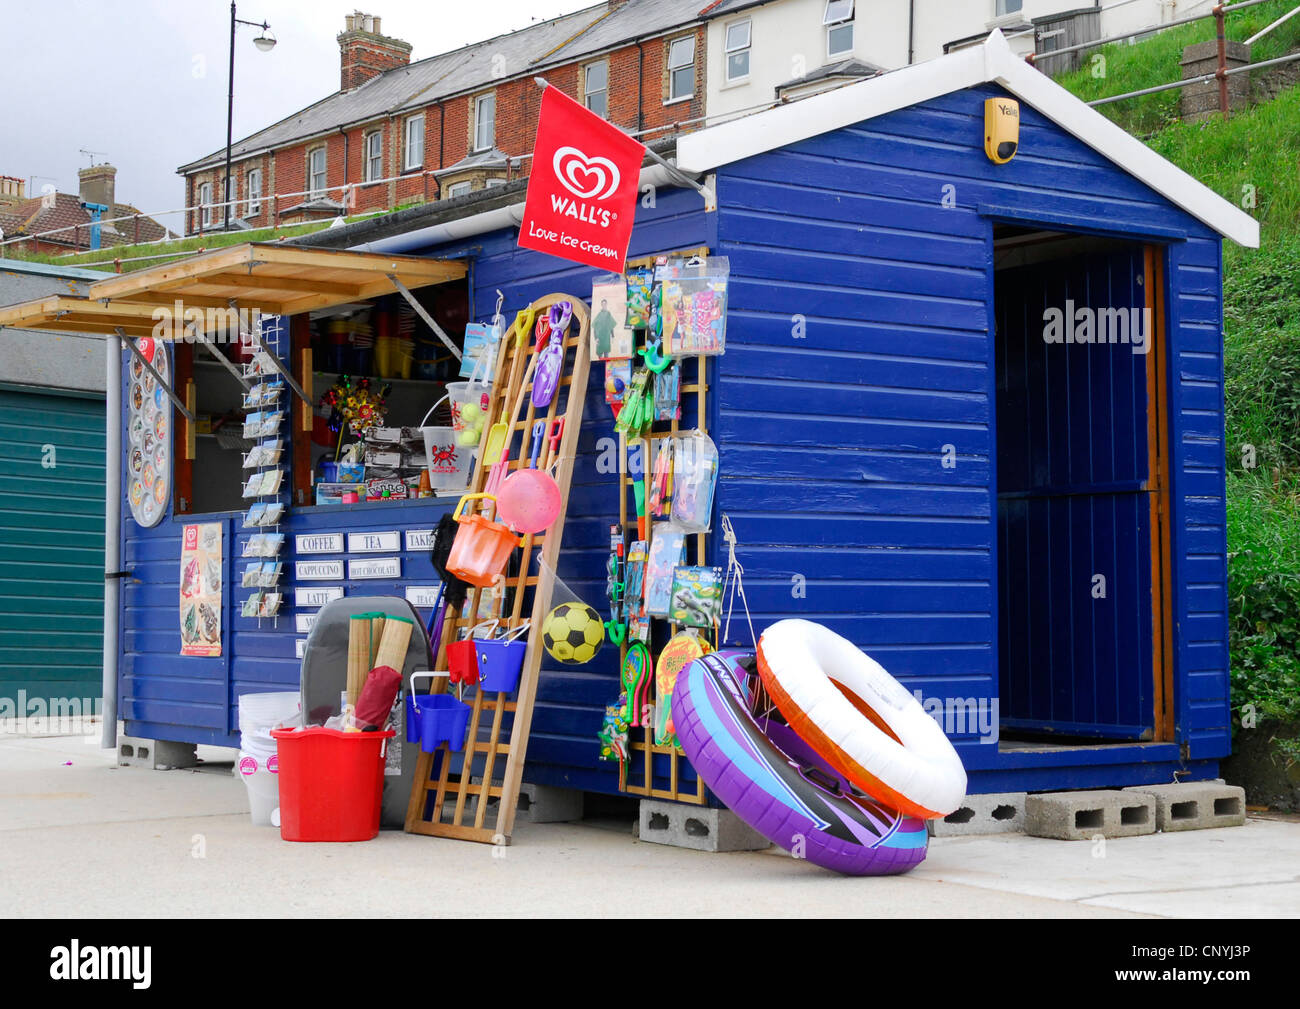 Suffolk - Southwold - stallo sul mare - display a colori di benne - picche - Cartoline - nuotare galleggia -gelati ecc. Foto Stock